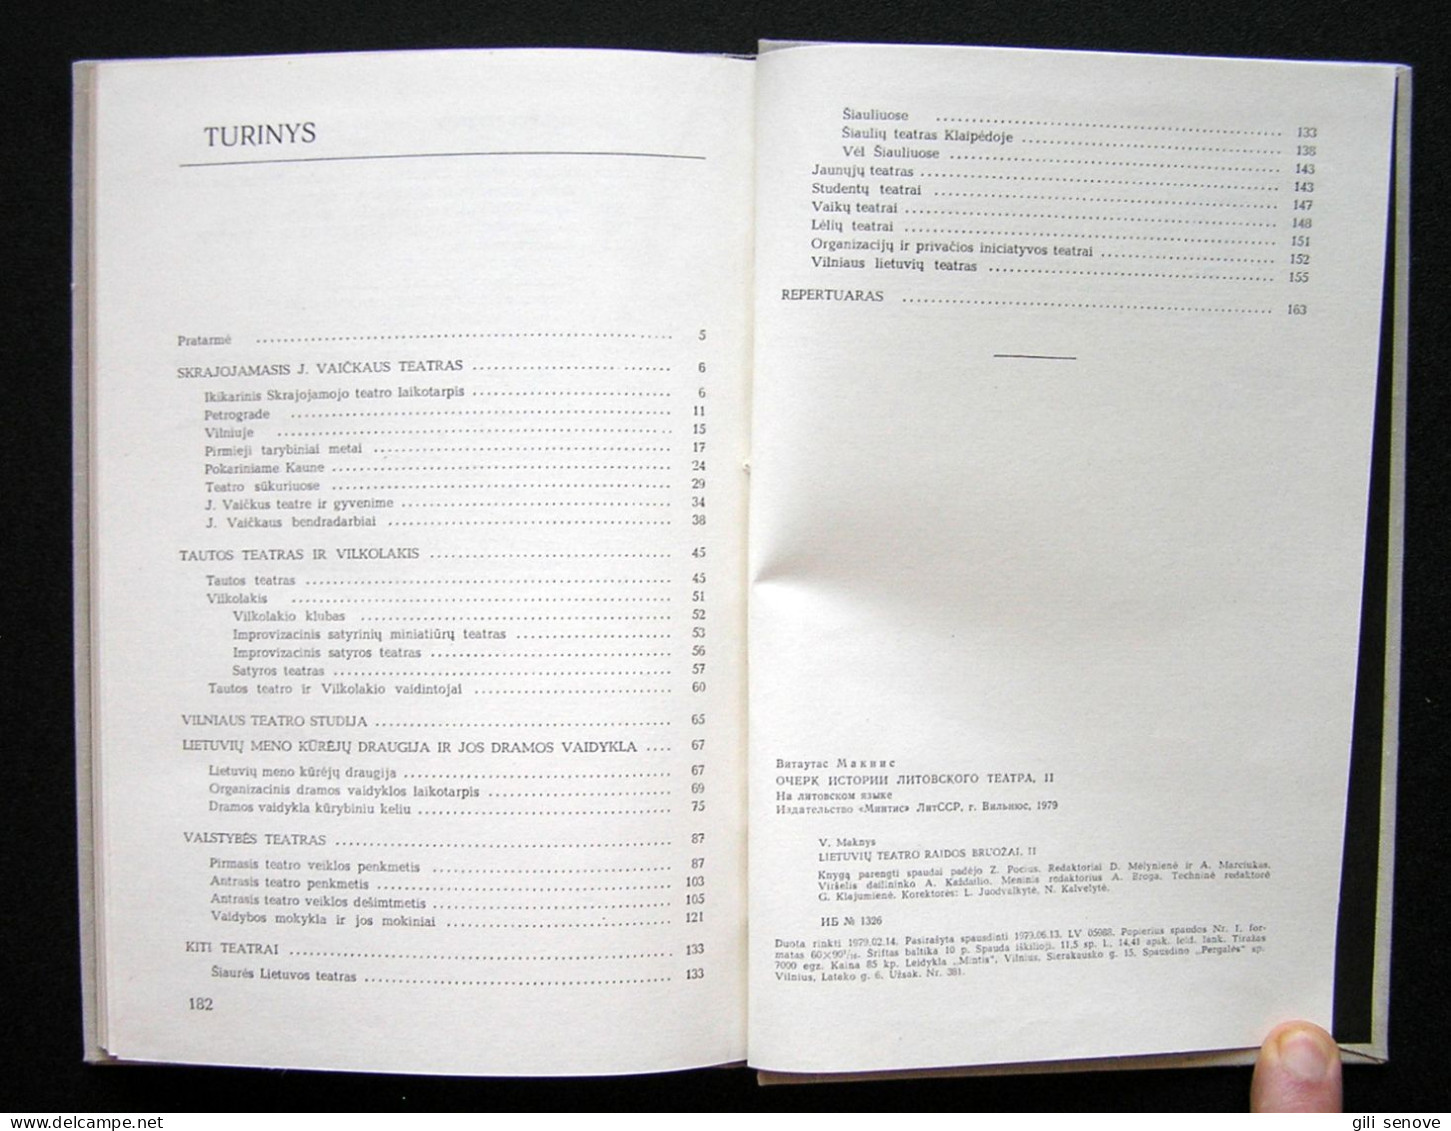 Lithuanian Book / Lietuvių Teatro Raidos Bruožai (1I Tomas) By Maknys 1979 - Kultur